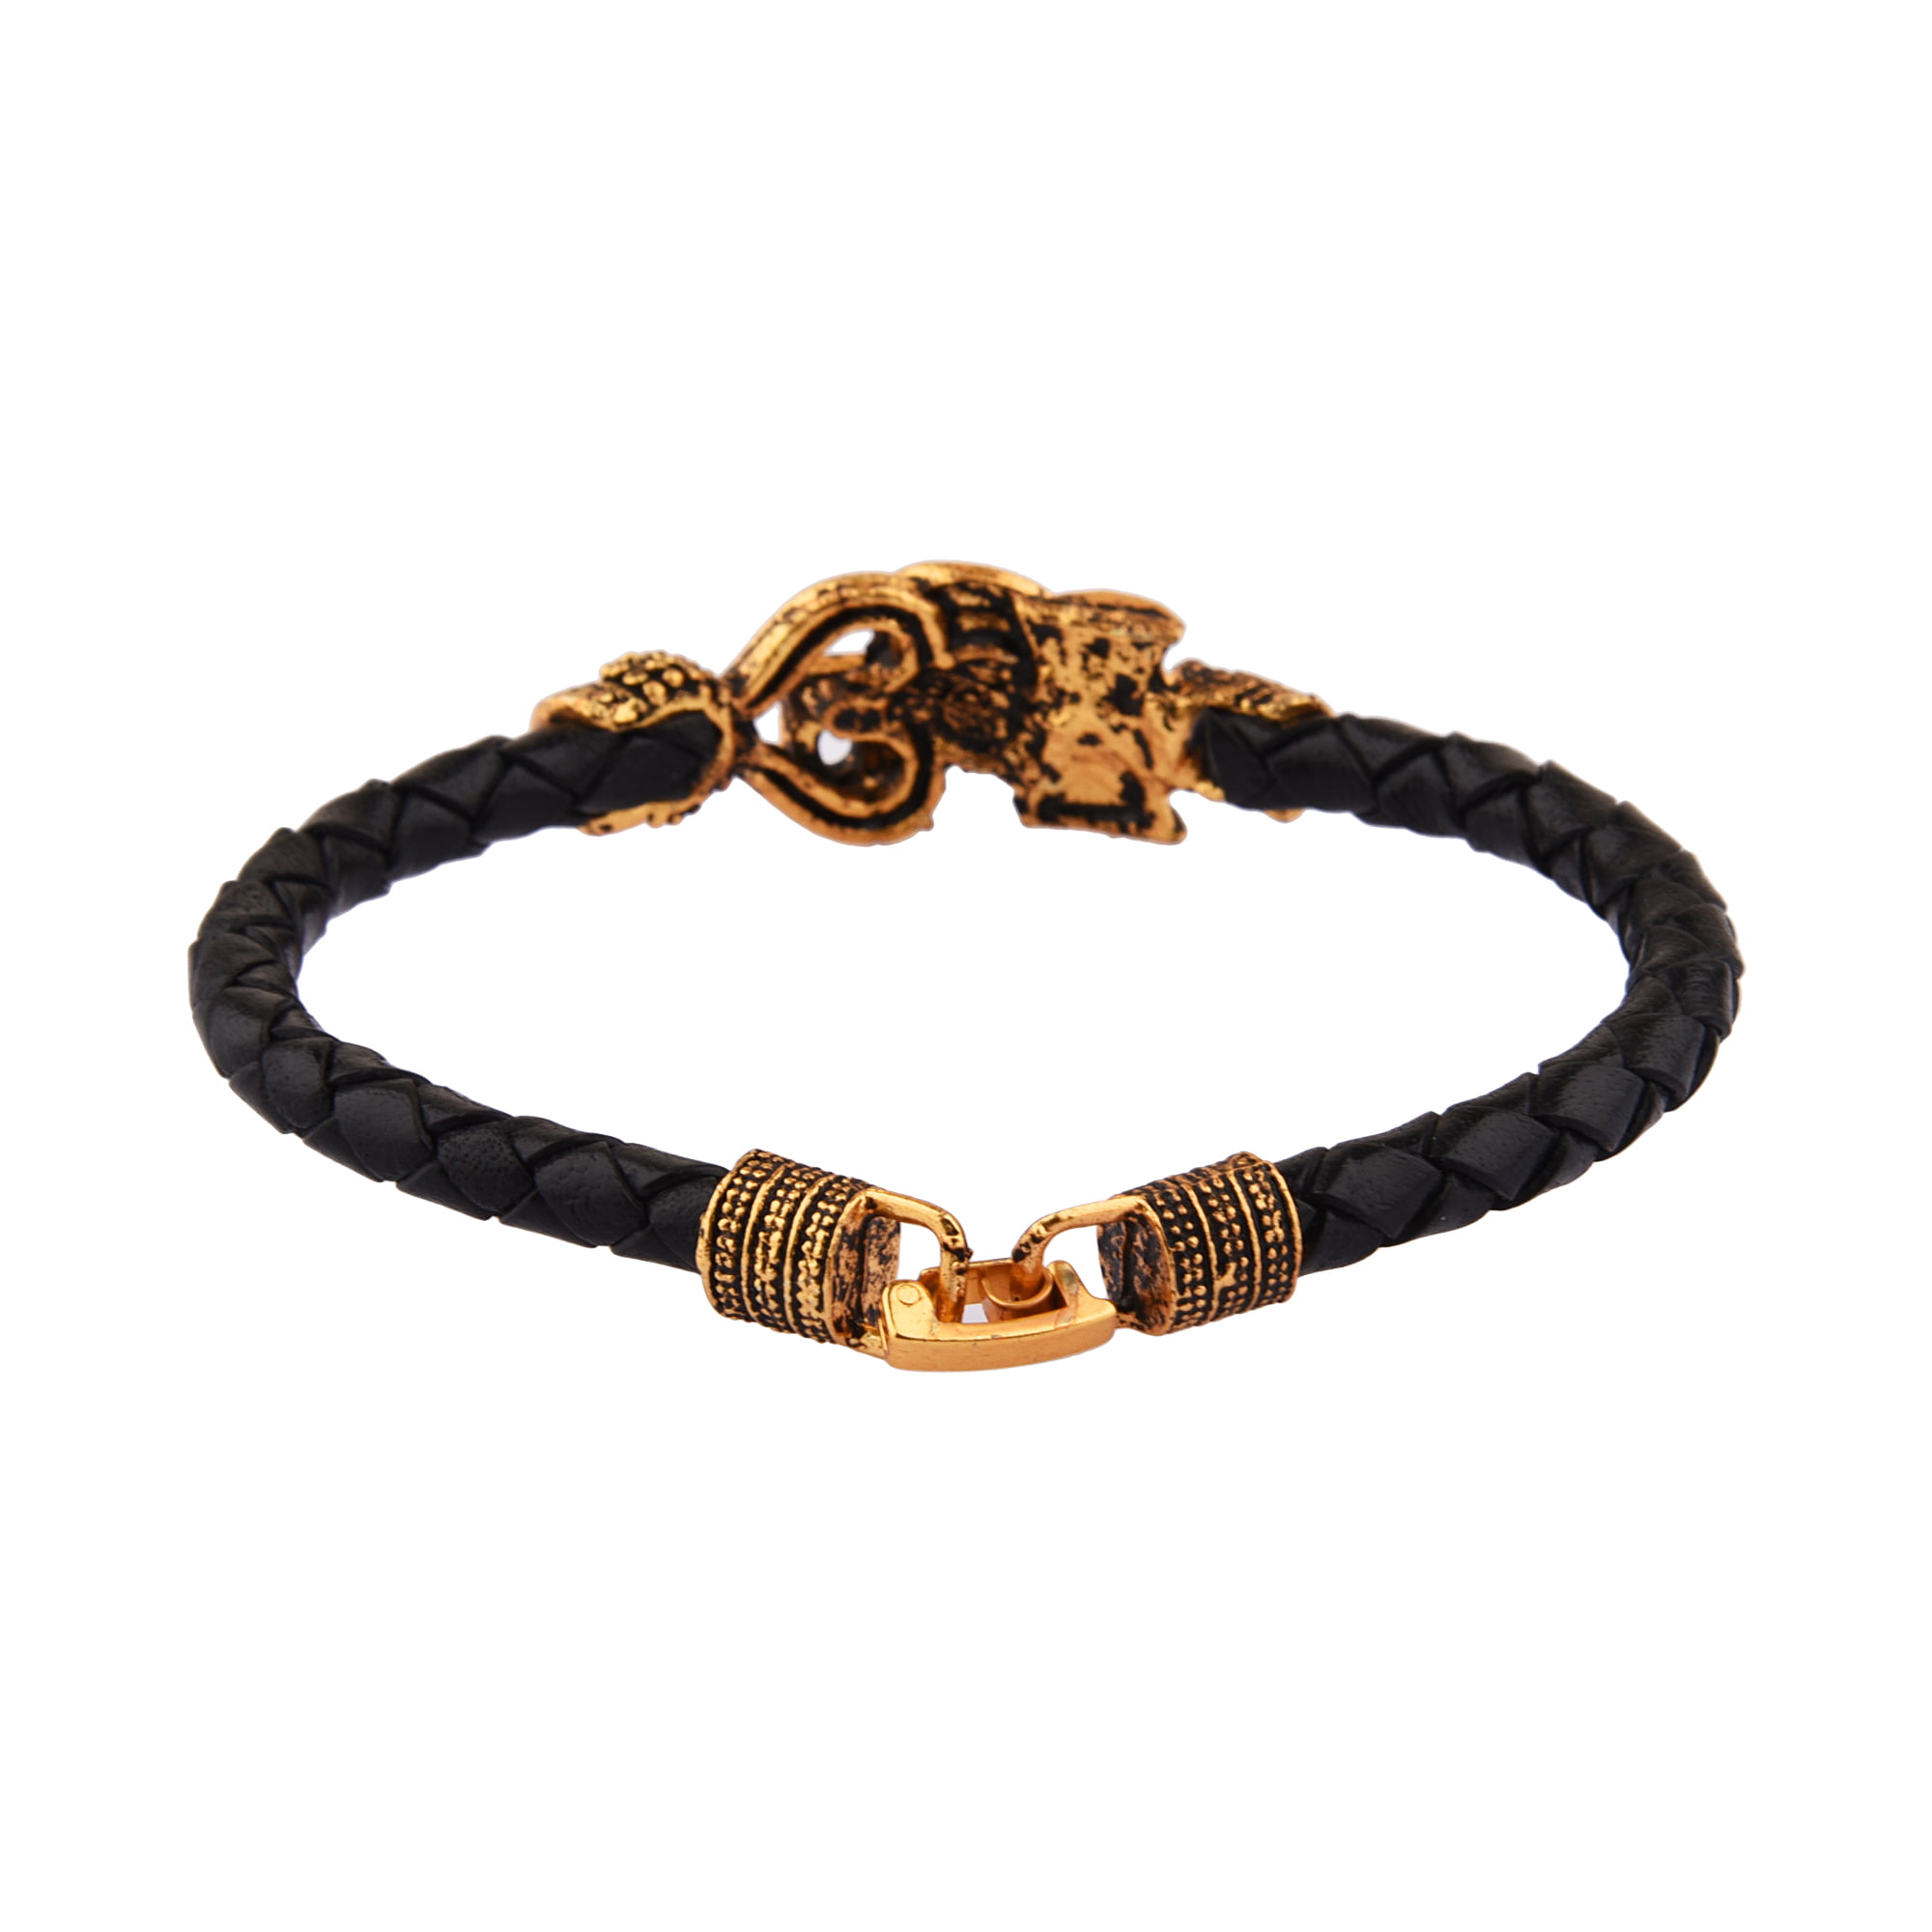 Large Brass Cuff Bracelet / Tribal / Mens Bracelet / Boho / 